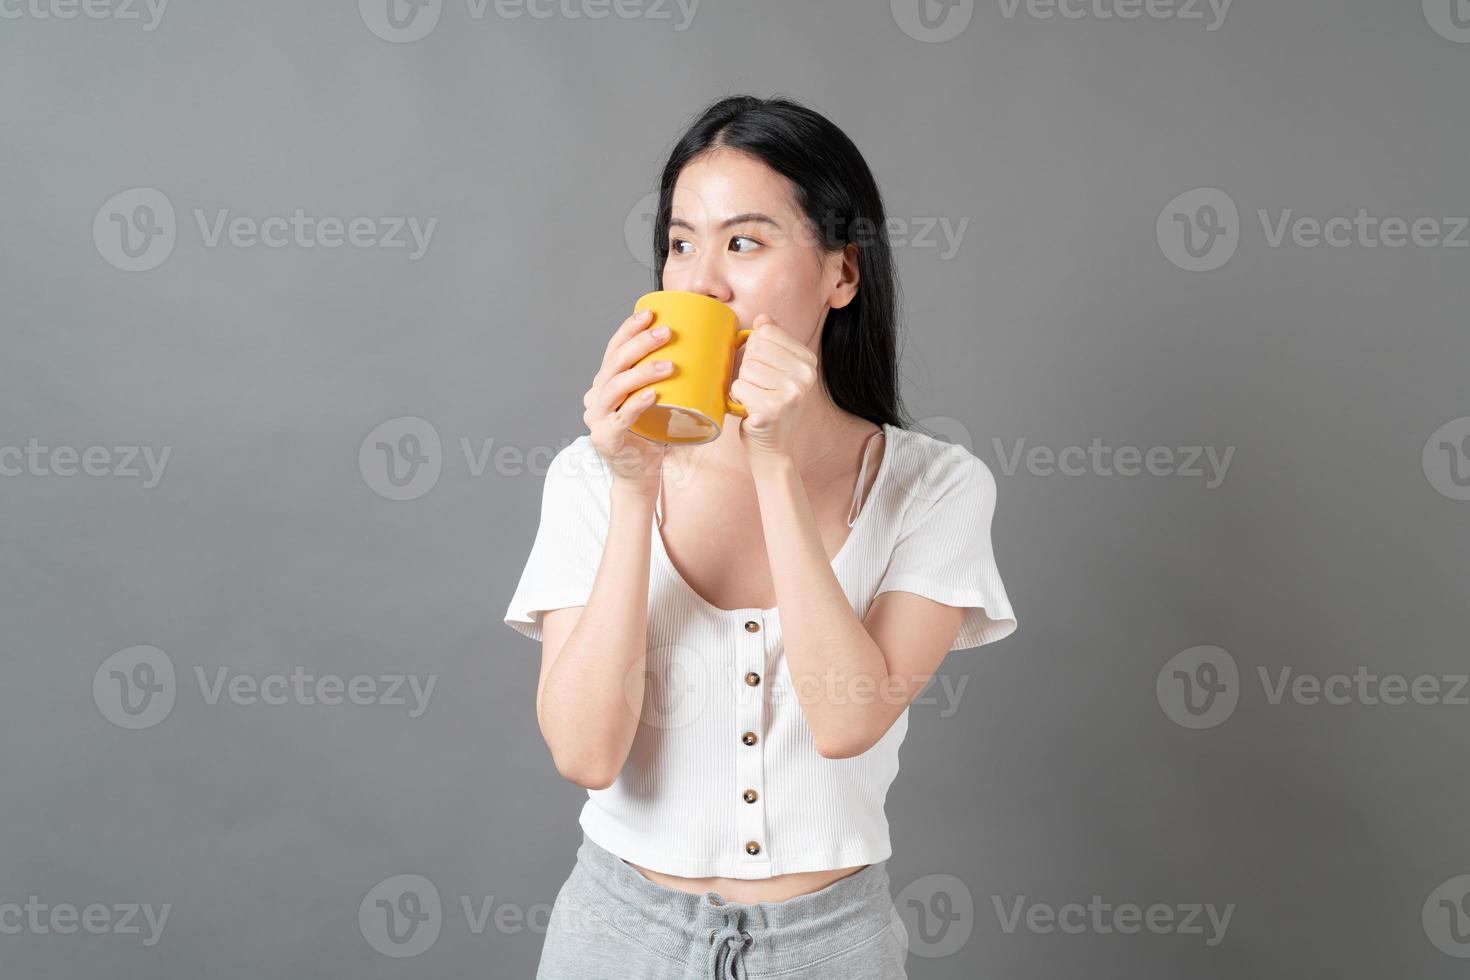 joven, mujer asiática, con, cara feliz, y, mano, tenencia, taza de café foto